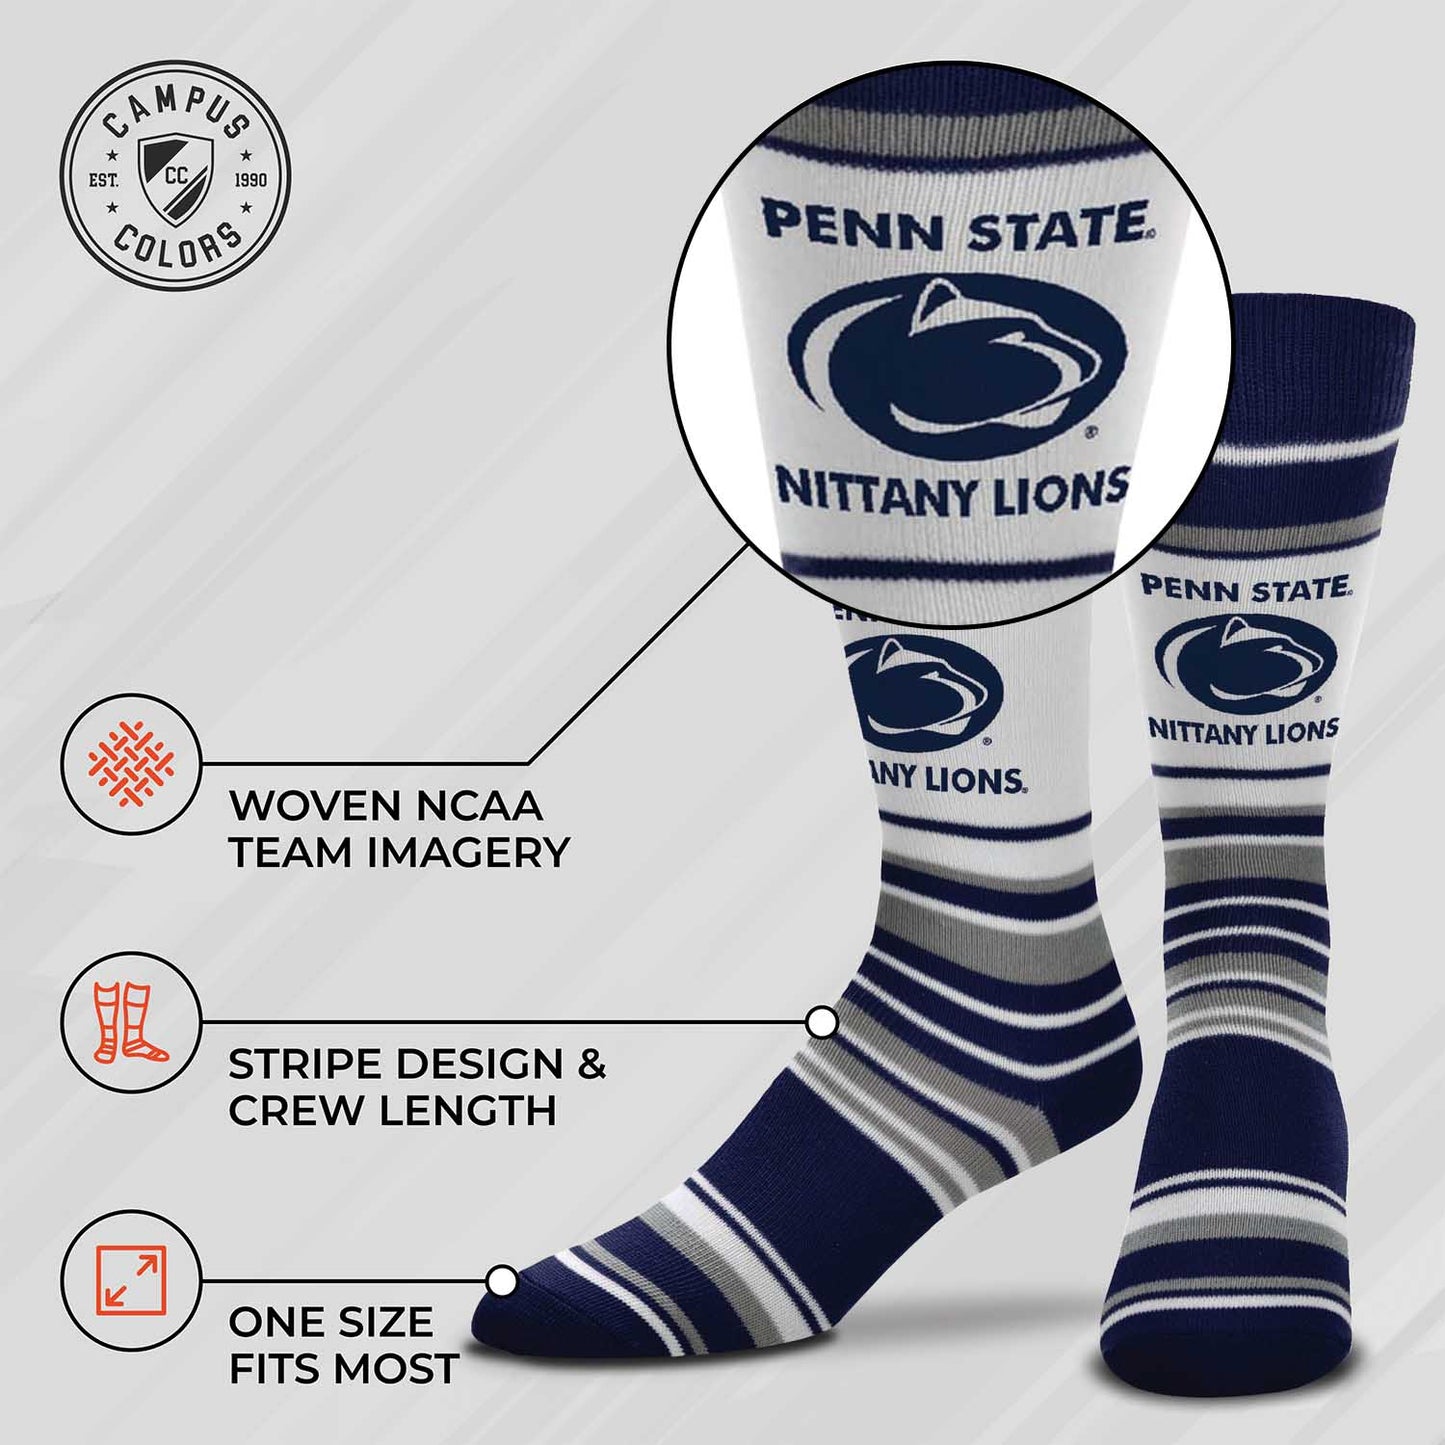 Penn State Nittany Lions Collegiate University Striped Dress Socks - Navy